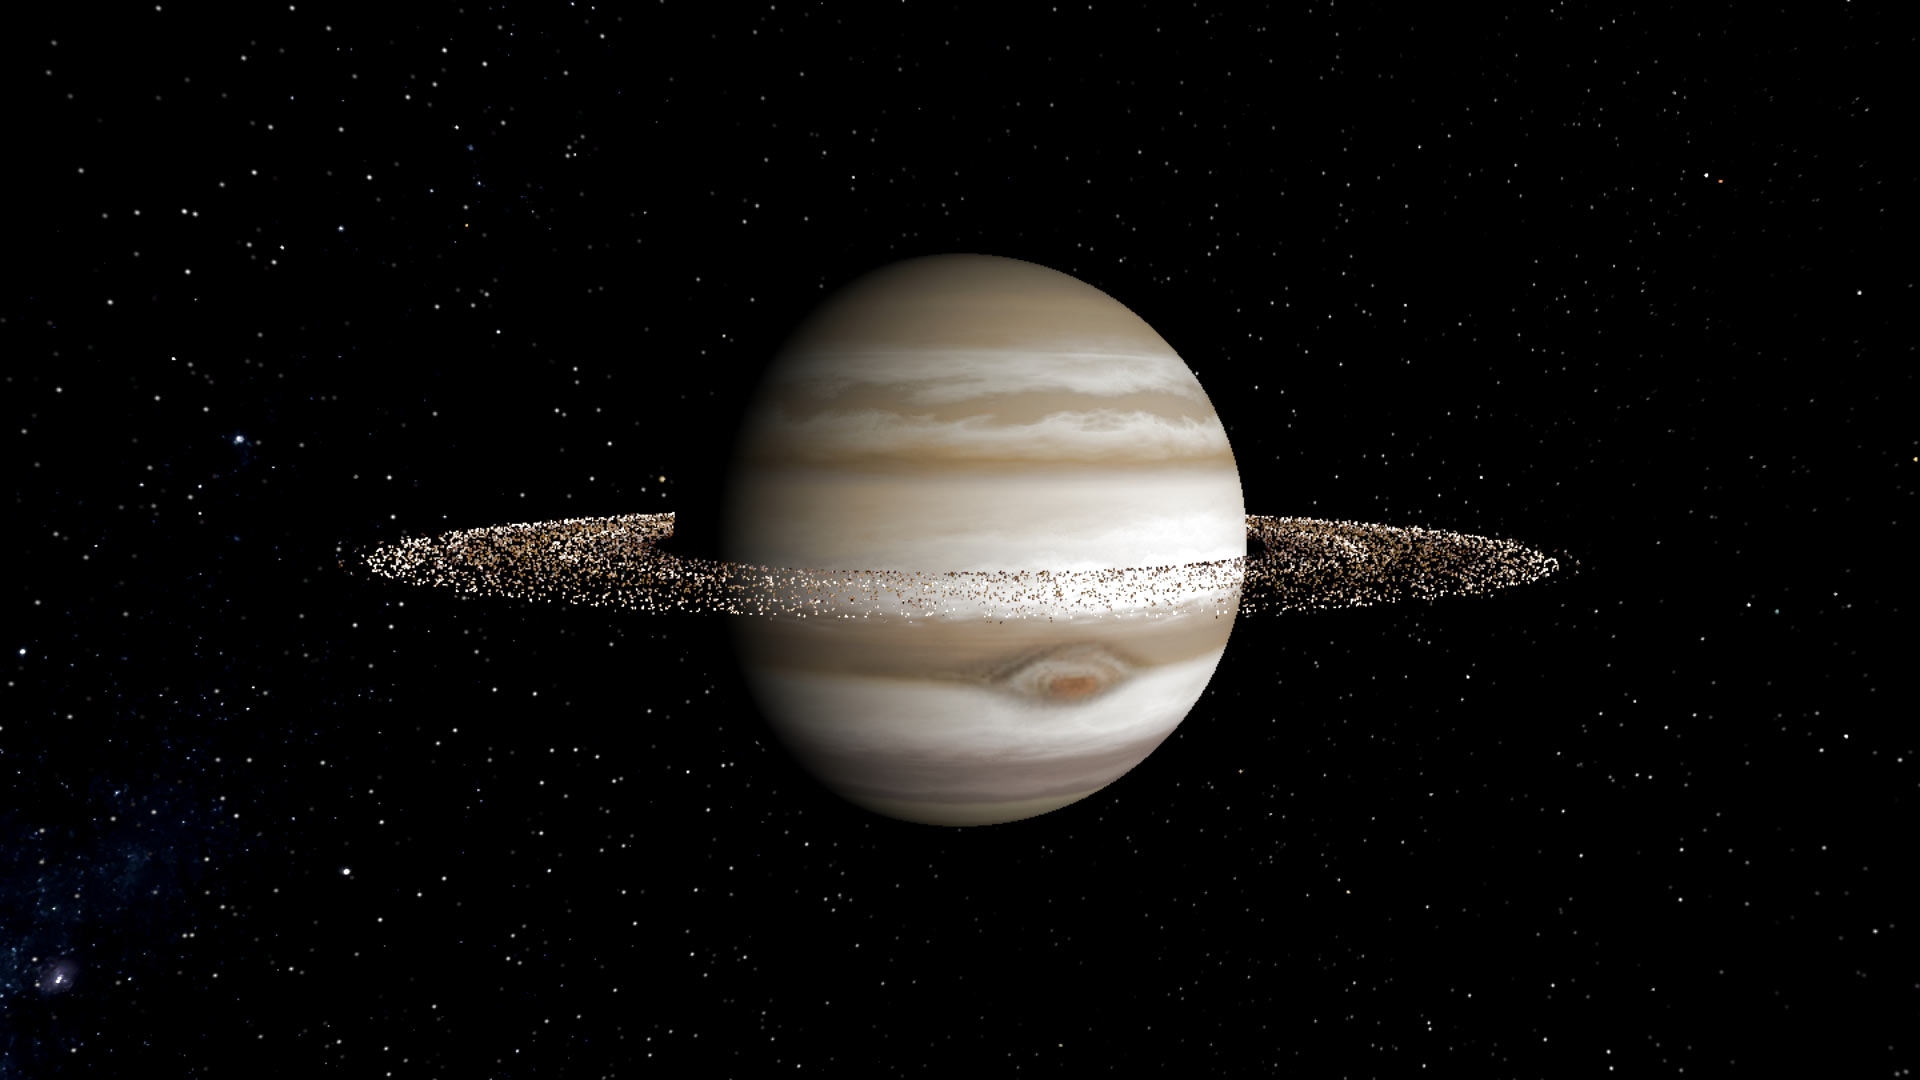 Система колец Юпитера